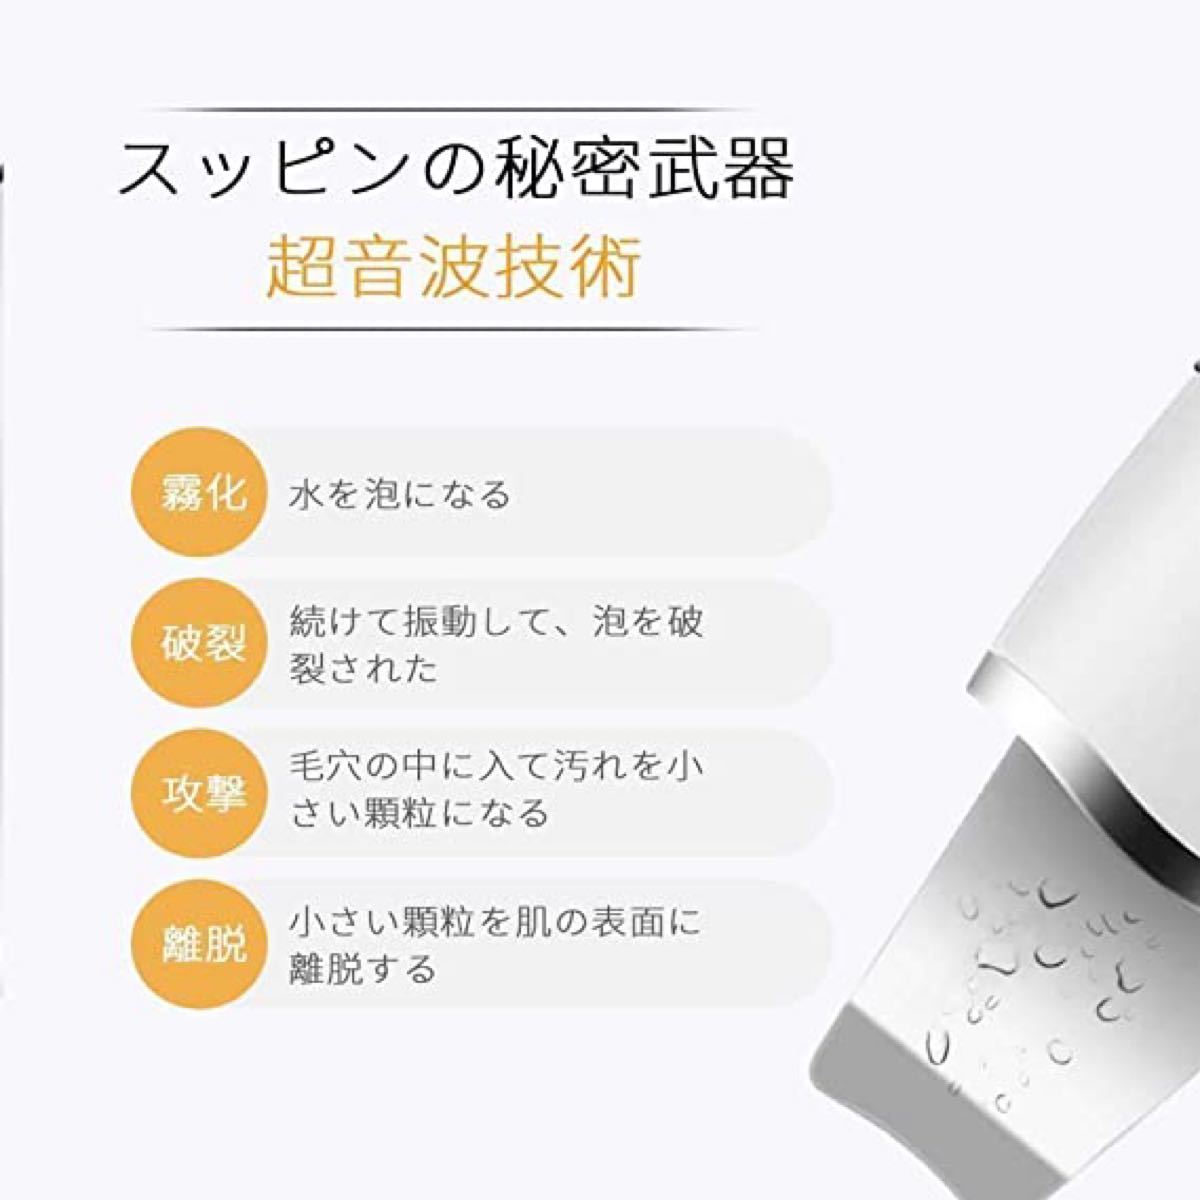 ウォーターピーリング 超音波 美顔器 超音波ピーリング 超音波振動 USB充電式 毛穴クリーナー usb充電式 日本語説明書付き